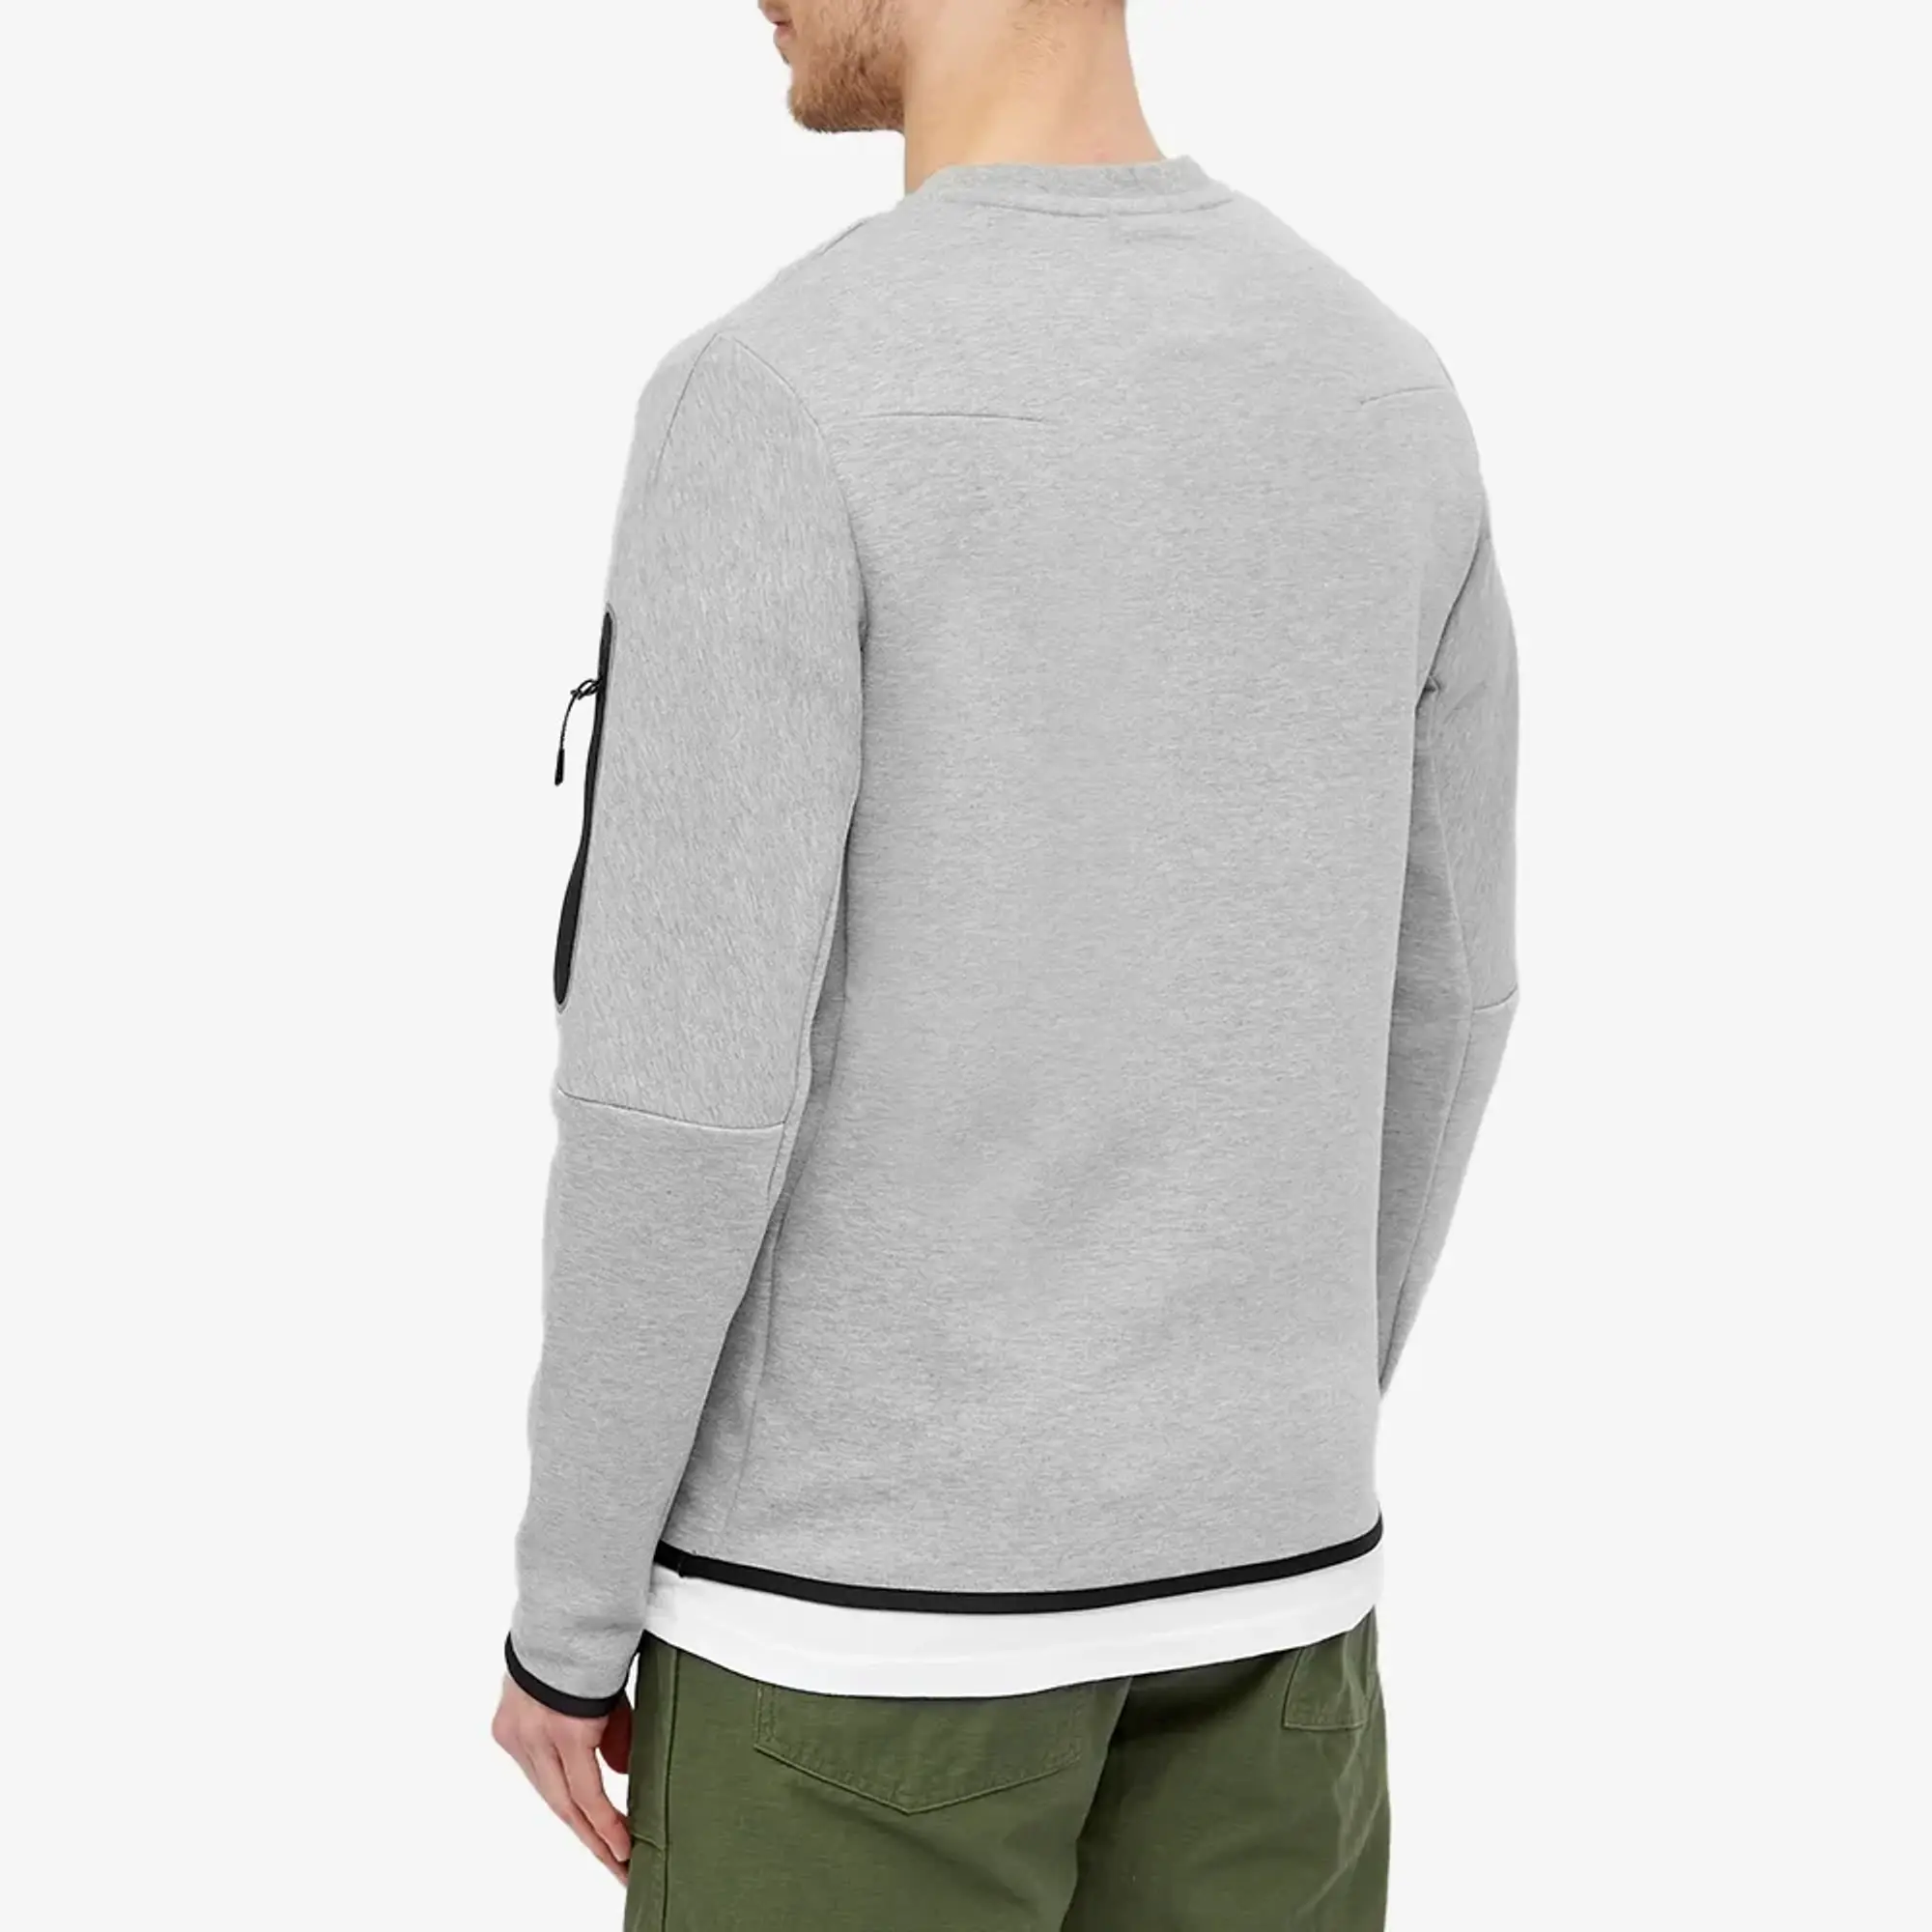 Nike Tech Fleece Sweater Mens